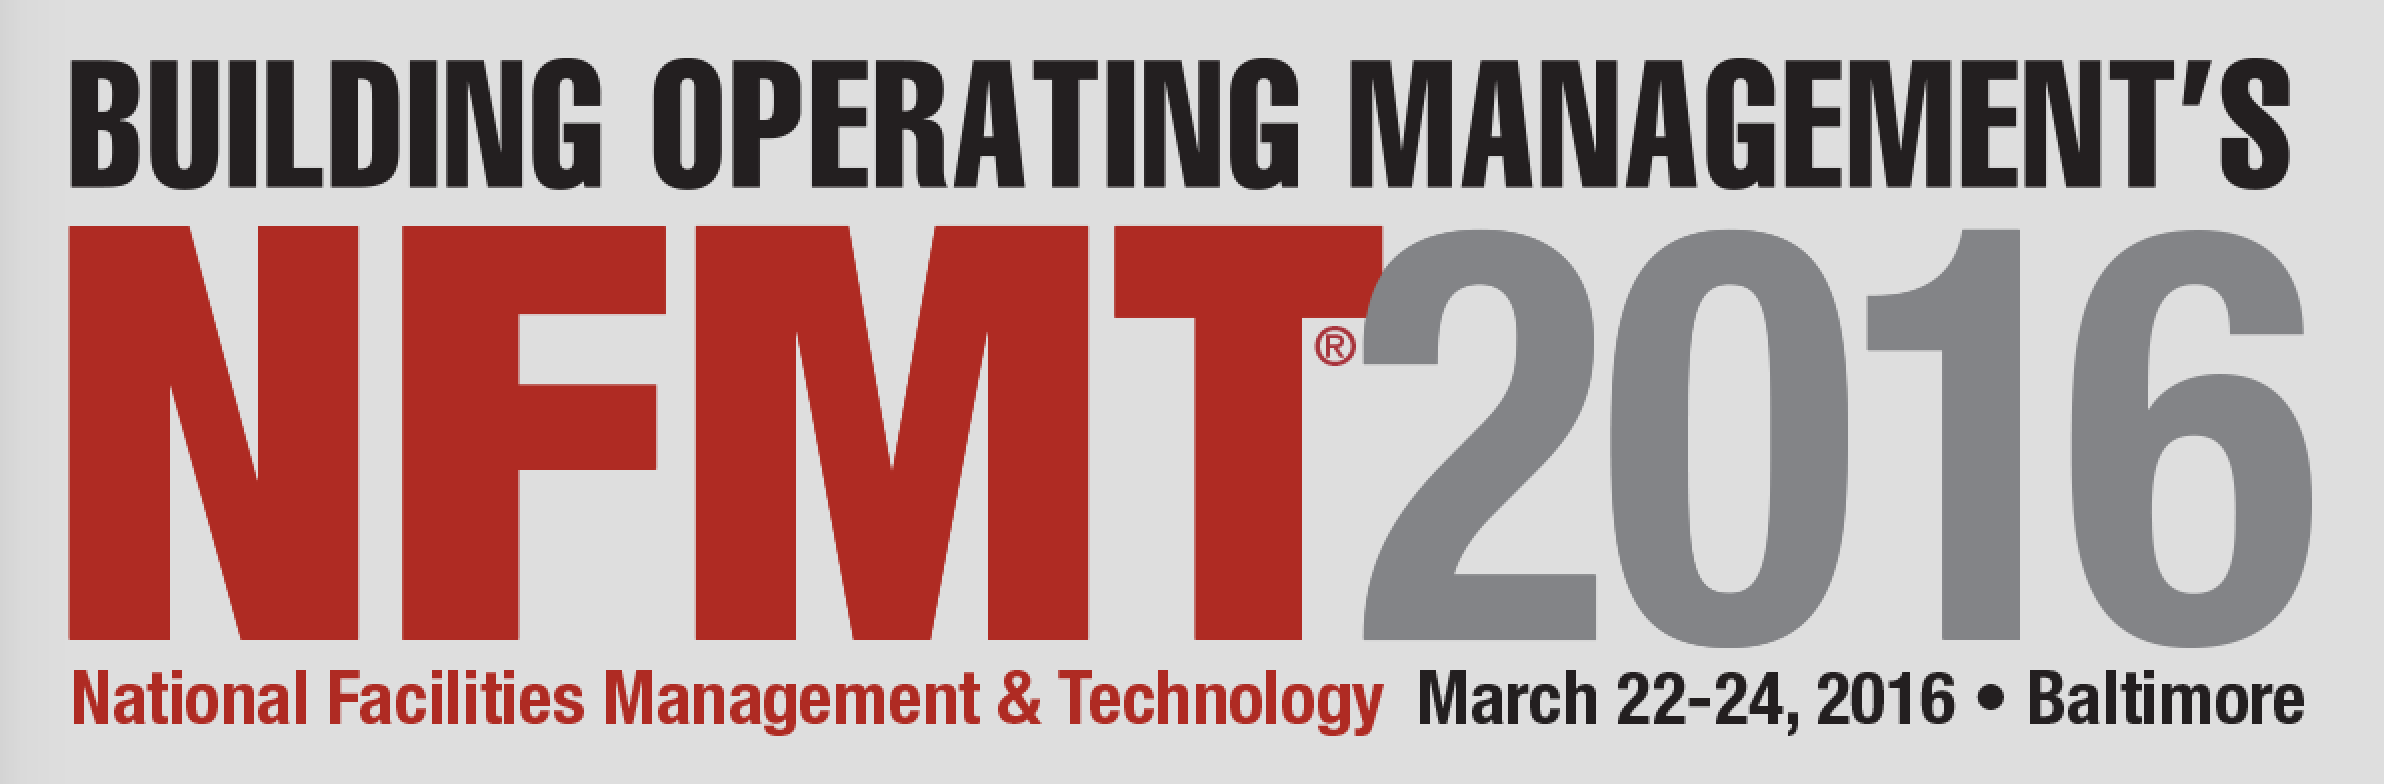 NFMT Building Operation Management conference 2016